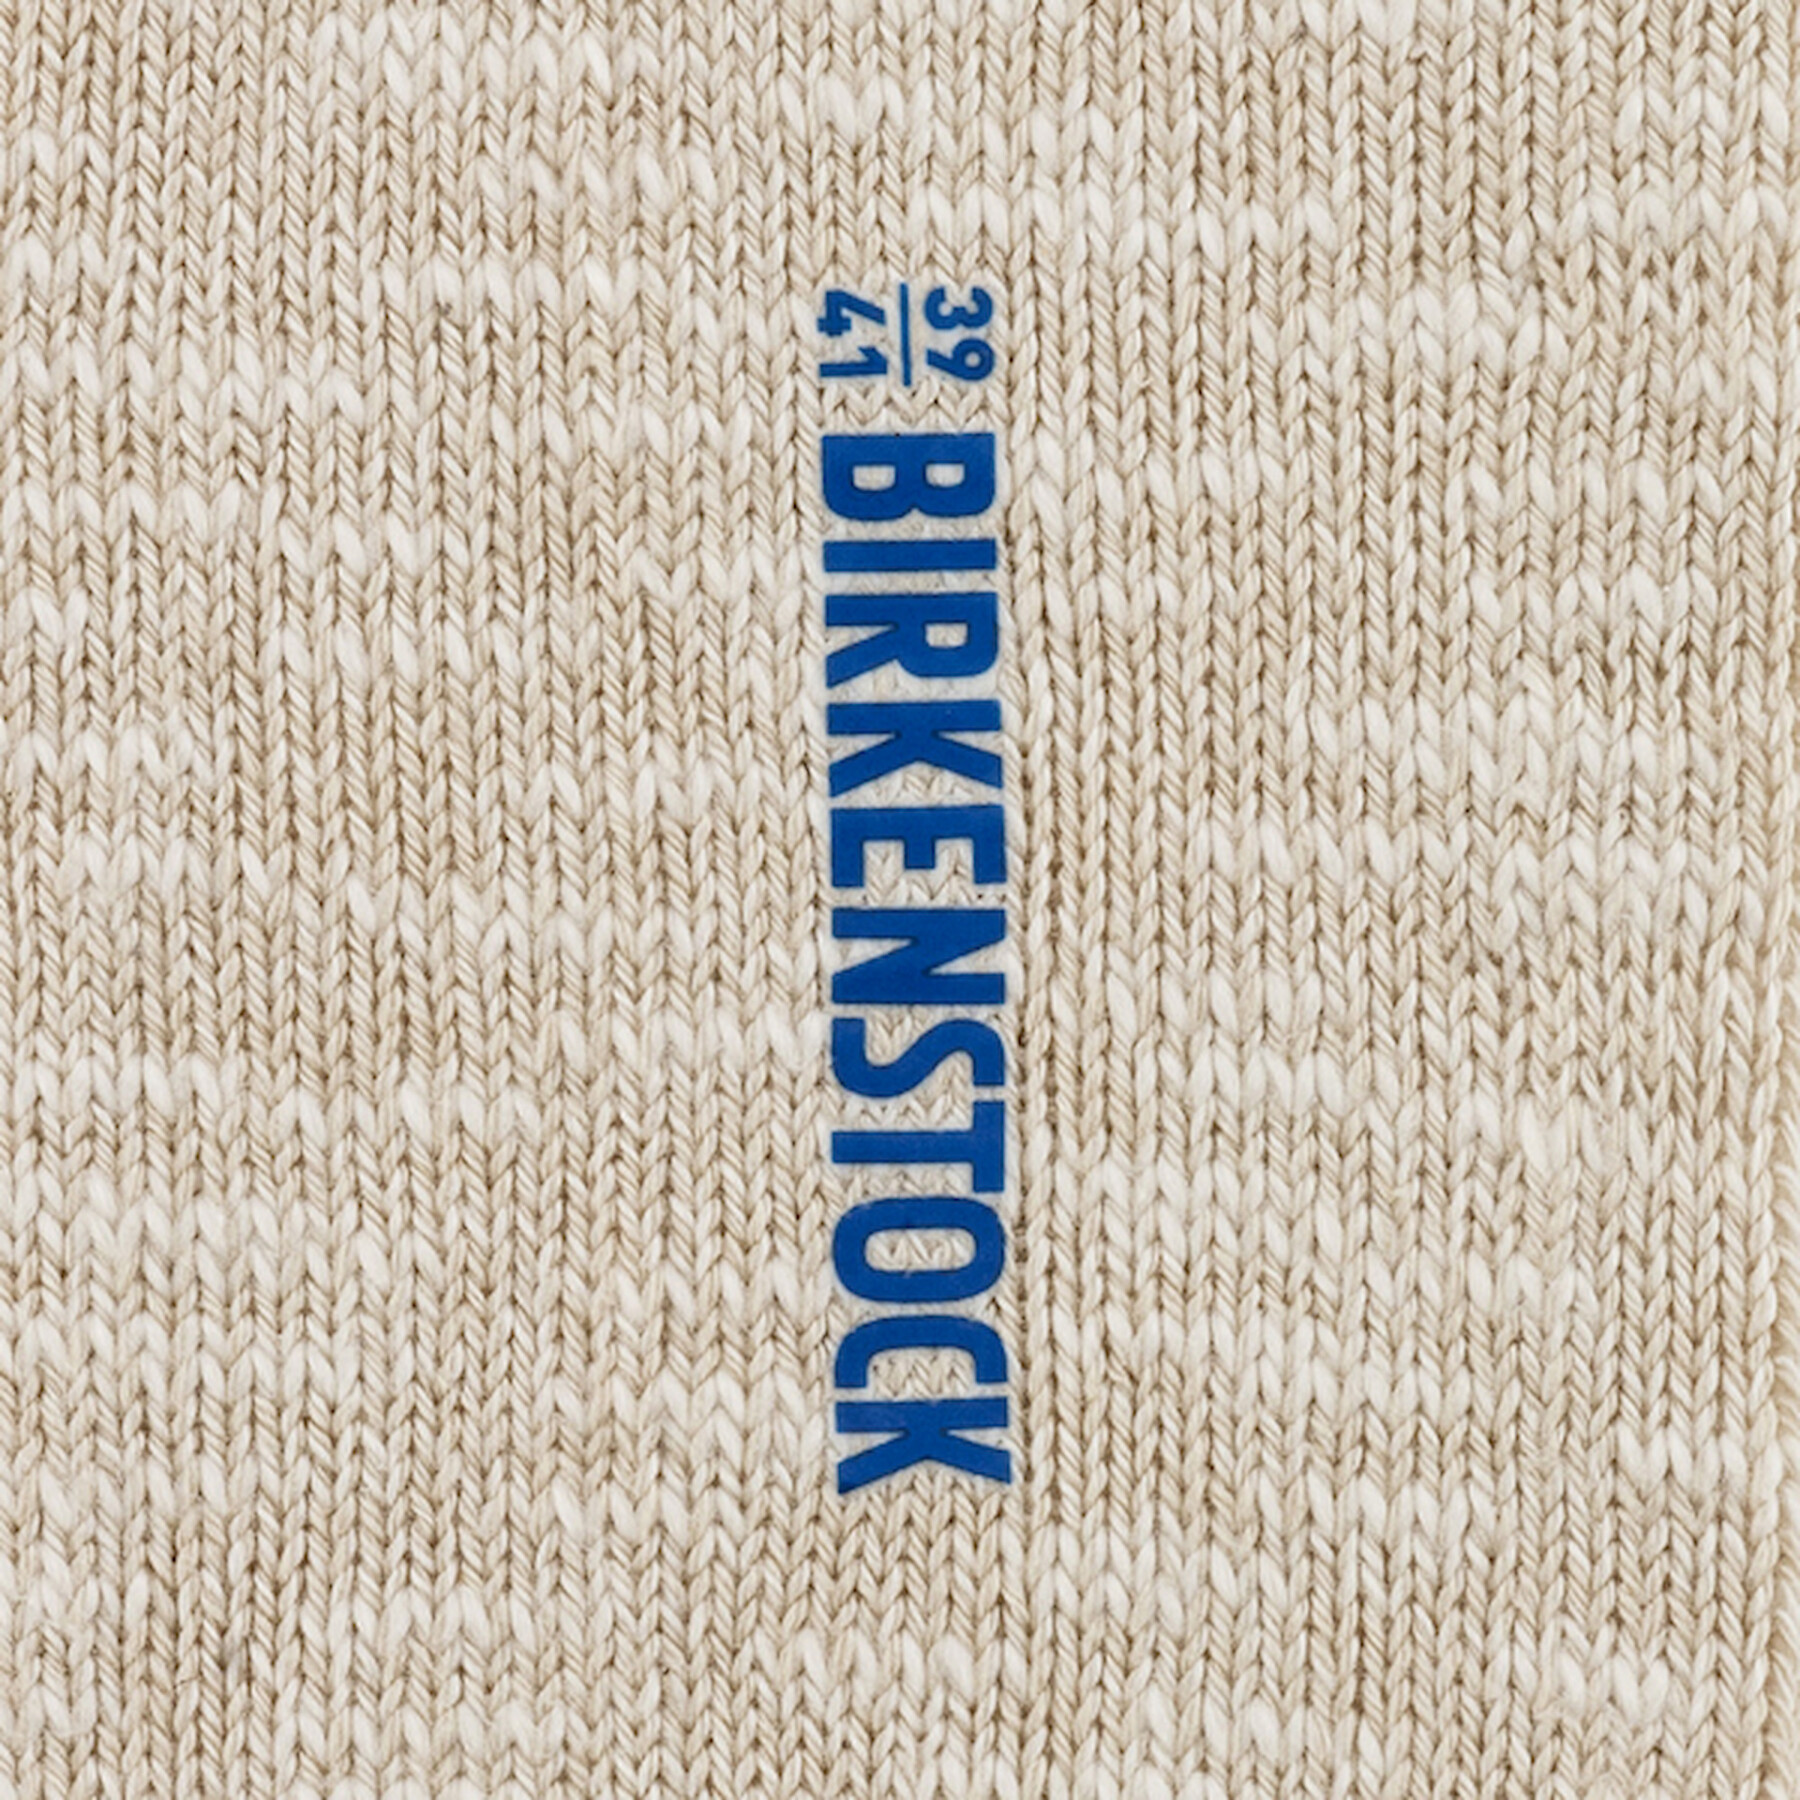 Socken Baumwolle Frau Birkenstock Slub